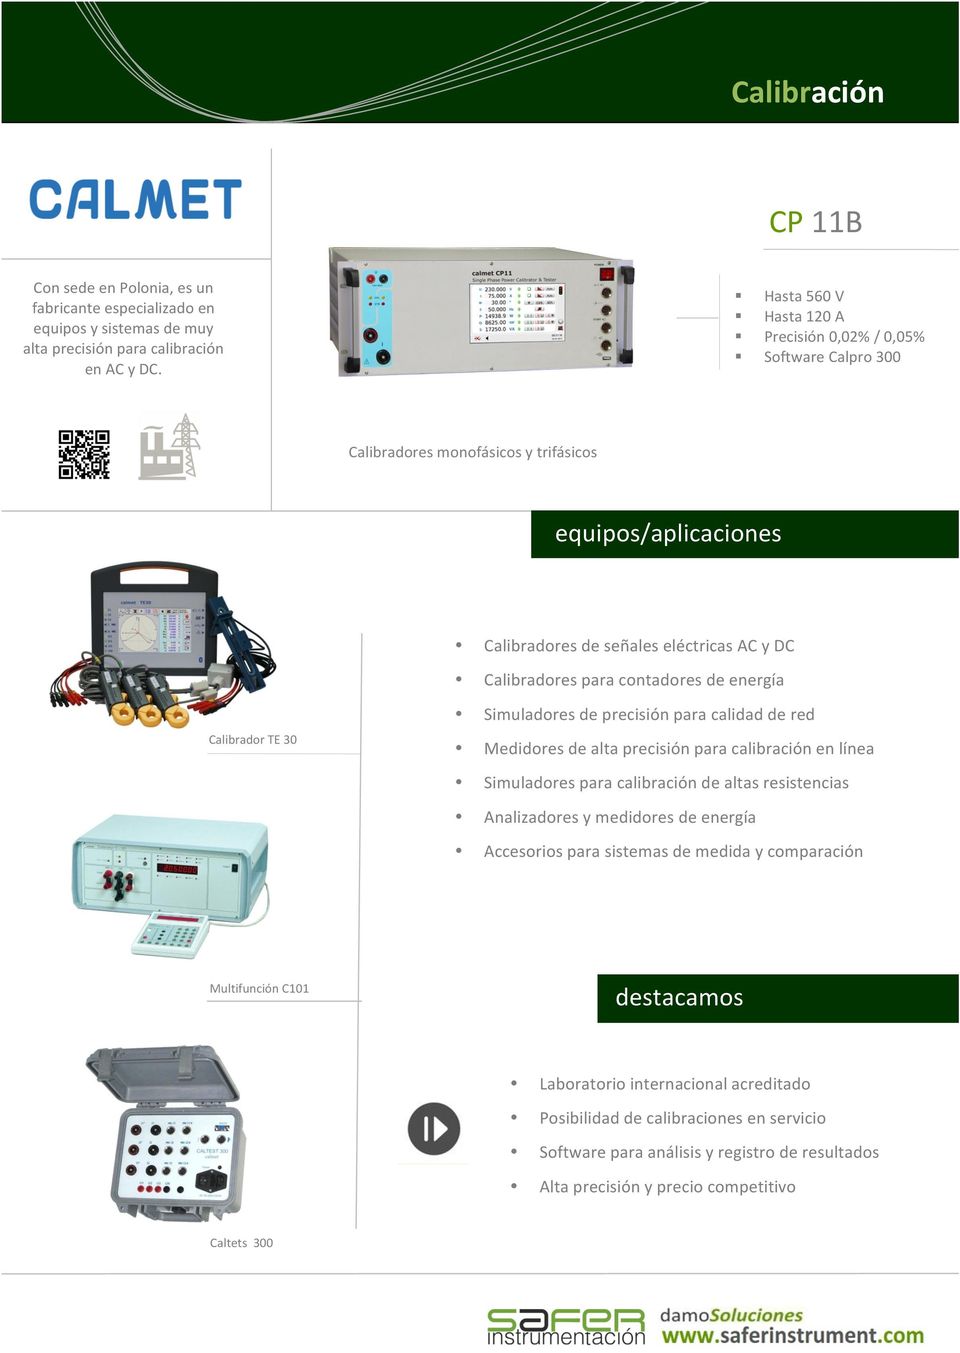 Calibrador TE 30 Simuladores de precisión para calidad de red Medidores de alta precisión para calibración en línea Simuladores para calibración de altas resistencias Analizadores y medidores